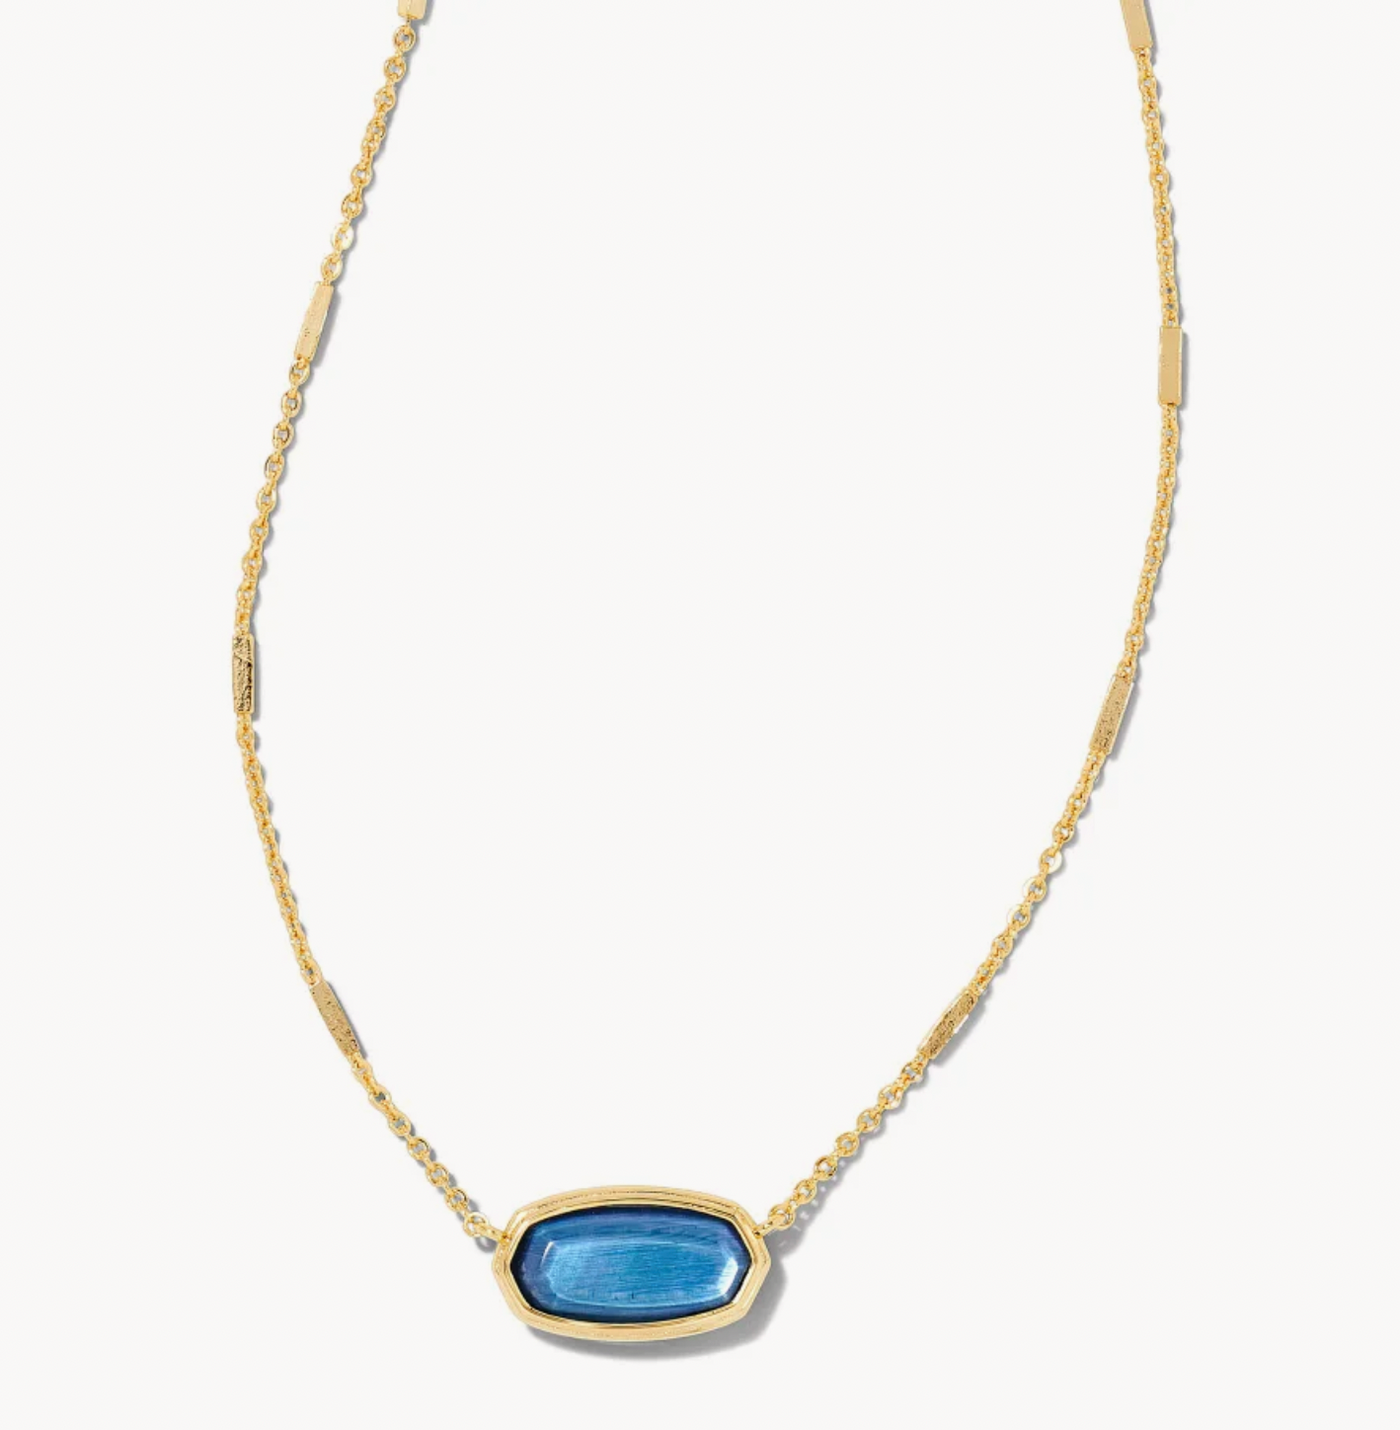 Kendra Scott Framed Elisa Gold Short Pendant Necklace in Dark Blue Mother-of-Pearl.